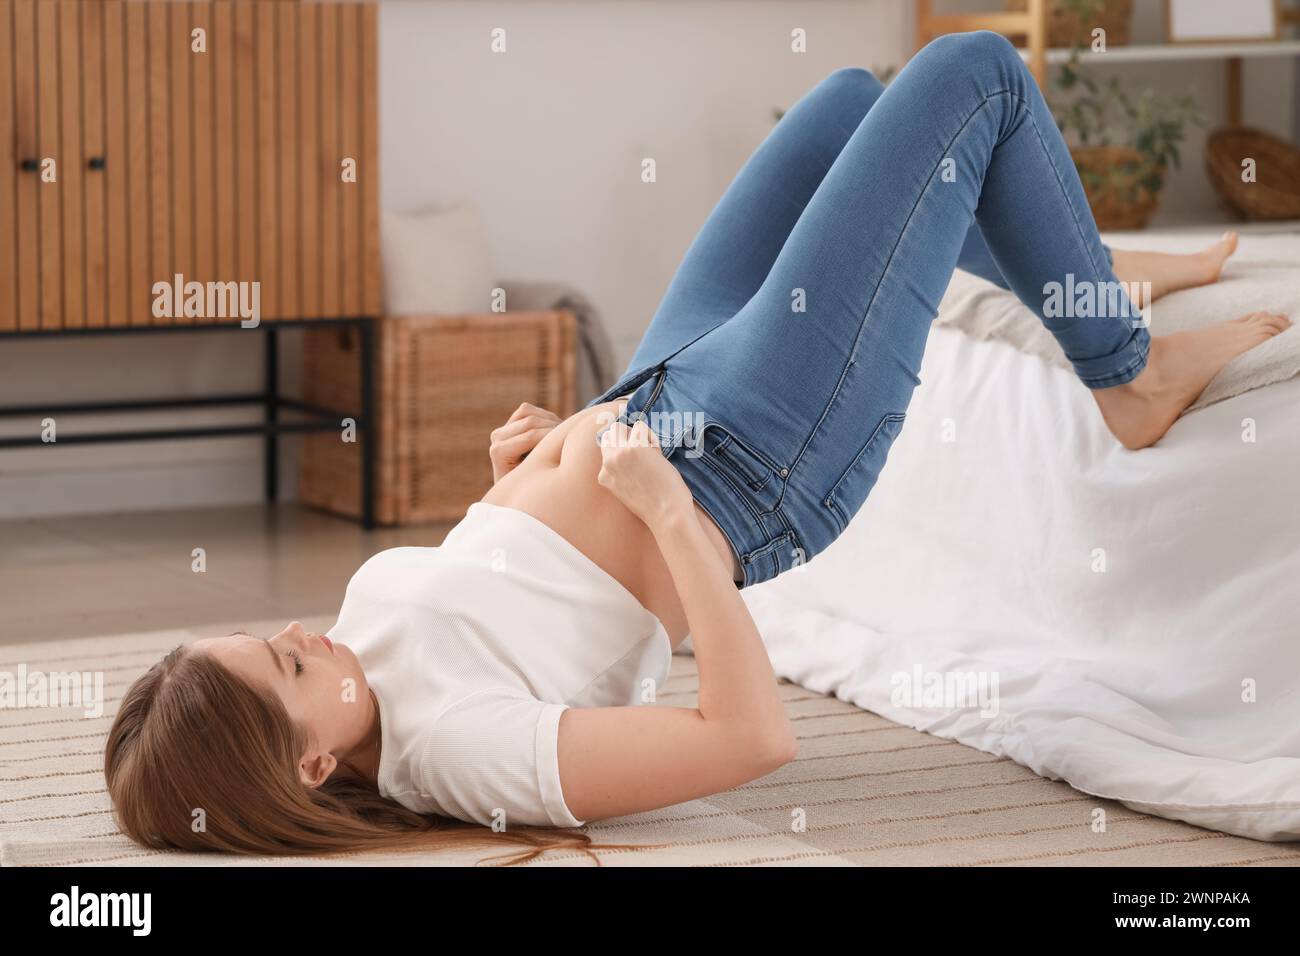 Jeune femme essayant de boutonner des jeans serrés dans la chambre. Concept de gain de poids Banque D'Images